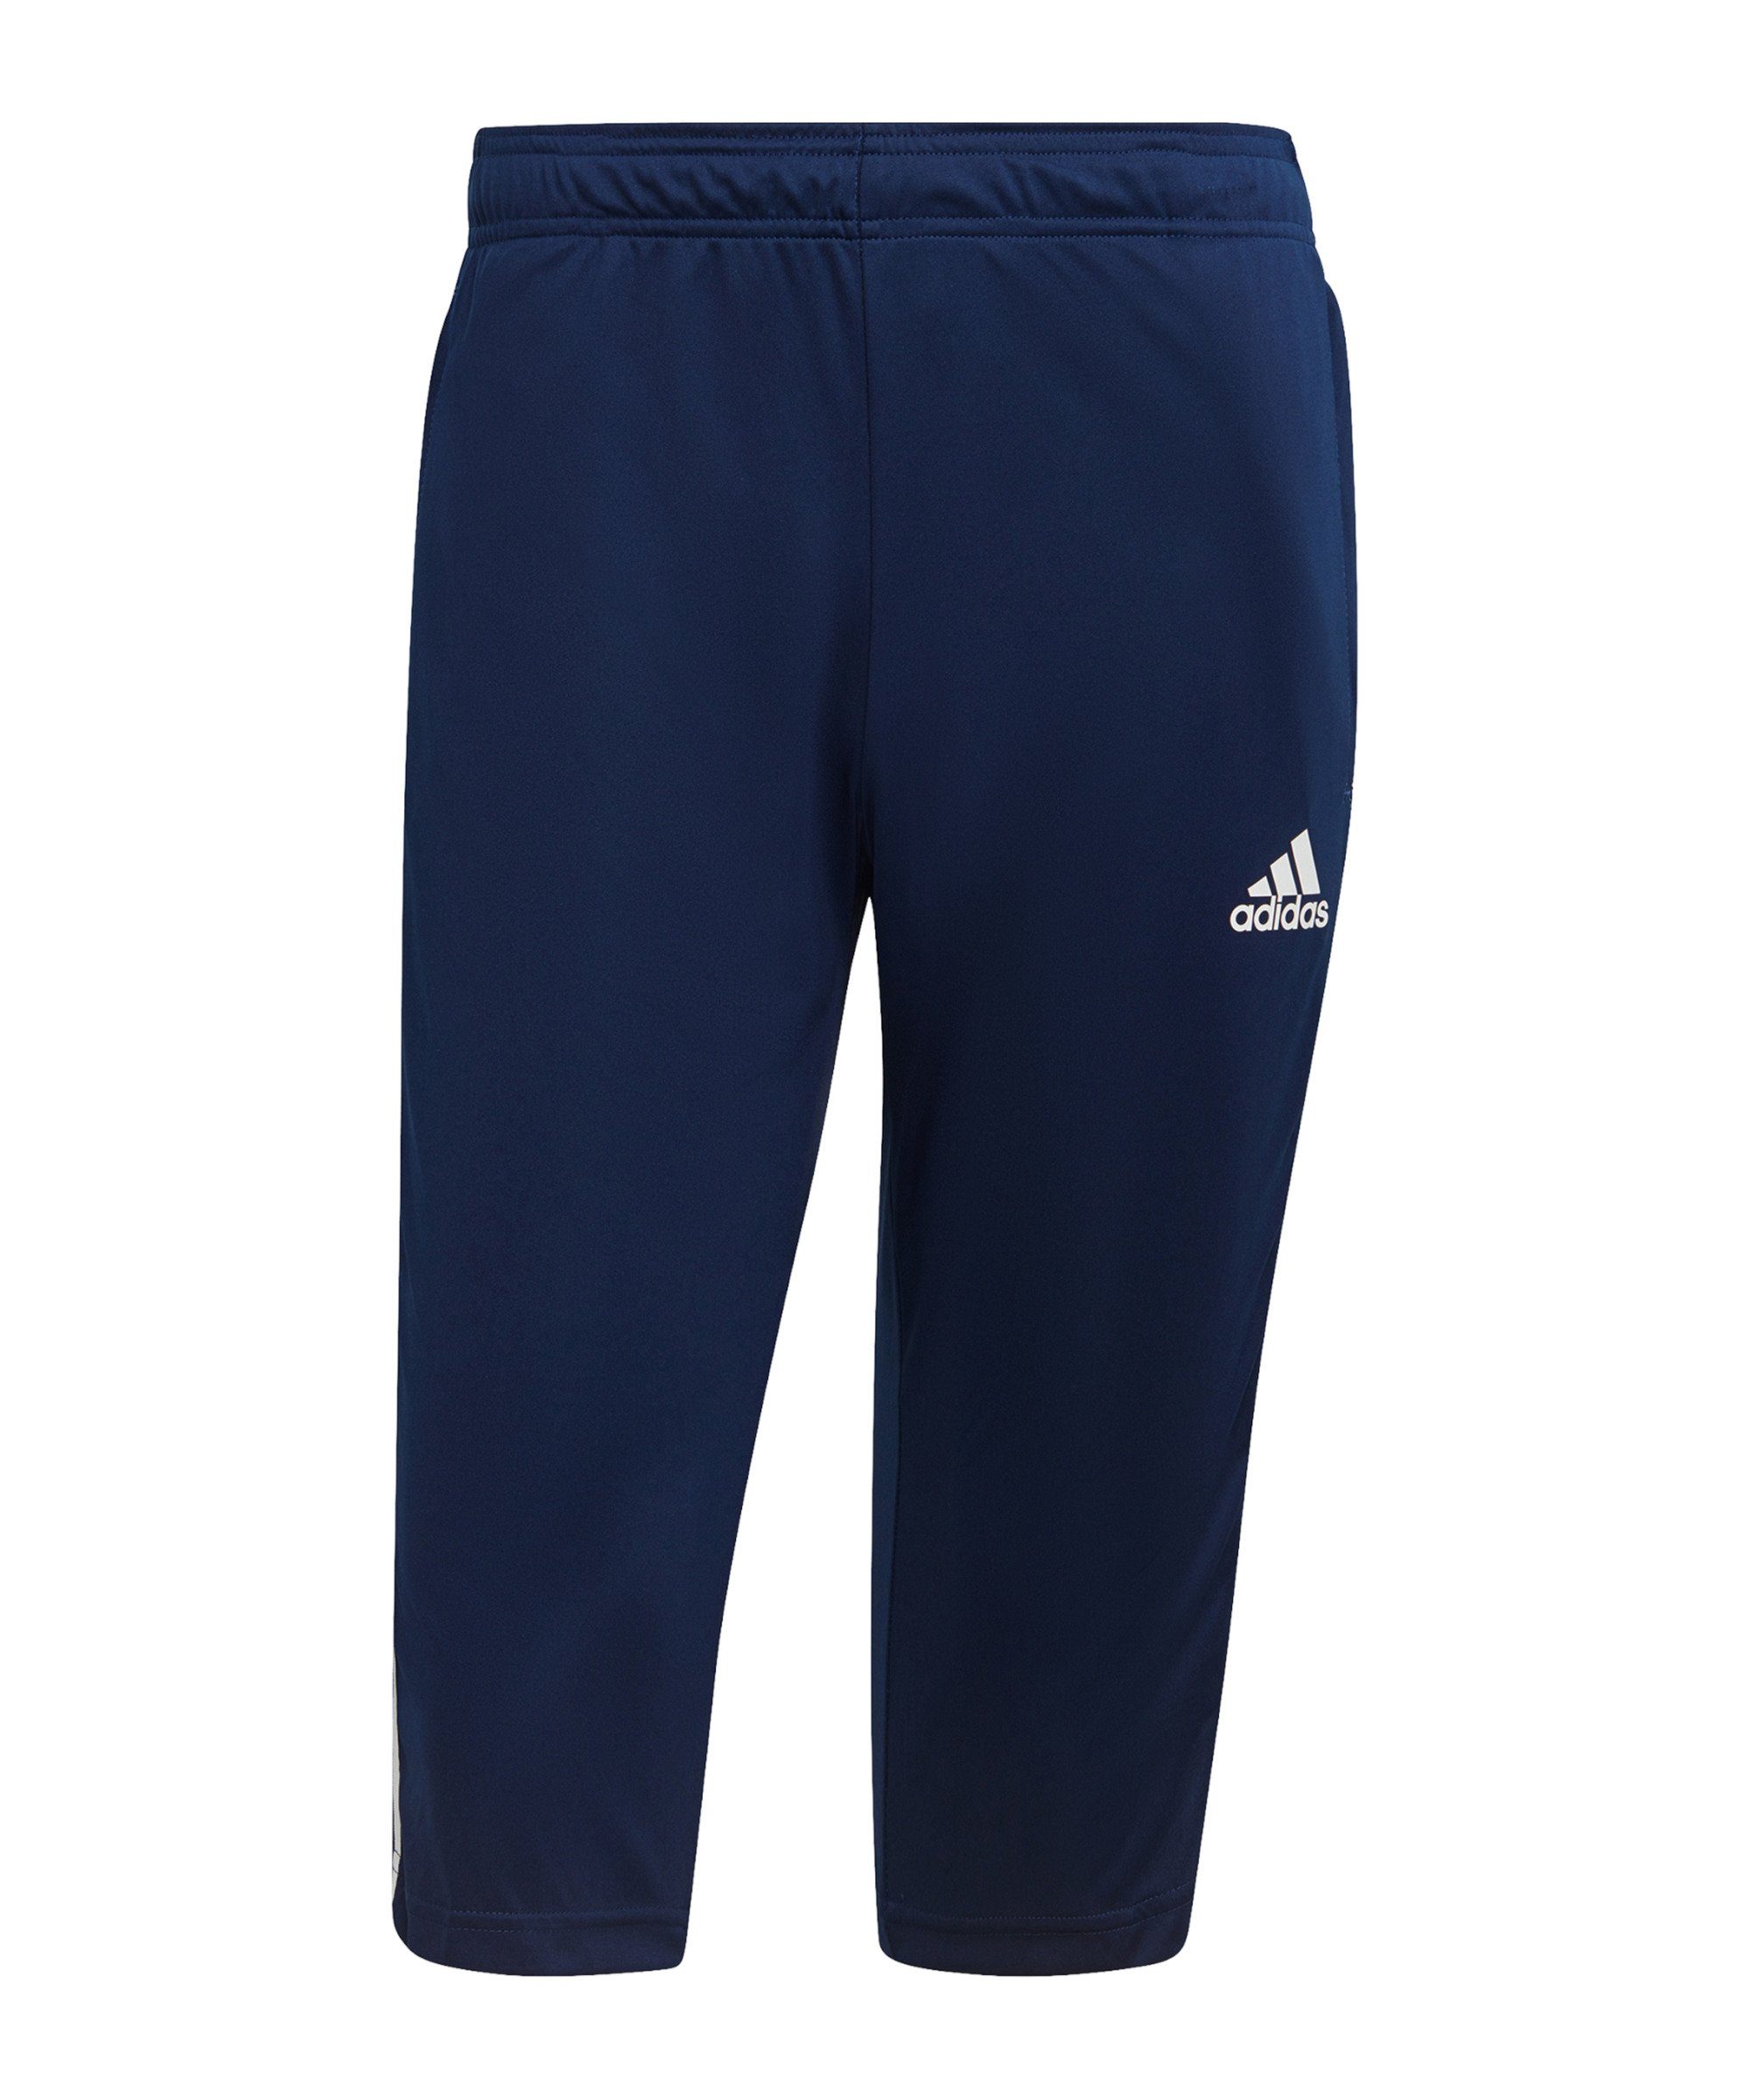 Adidas climacool Sporthose Shorts Kurze Hose Herren Trainingshose Blau